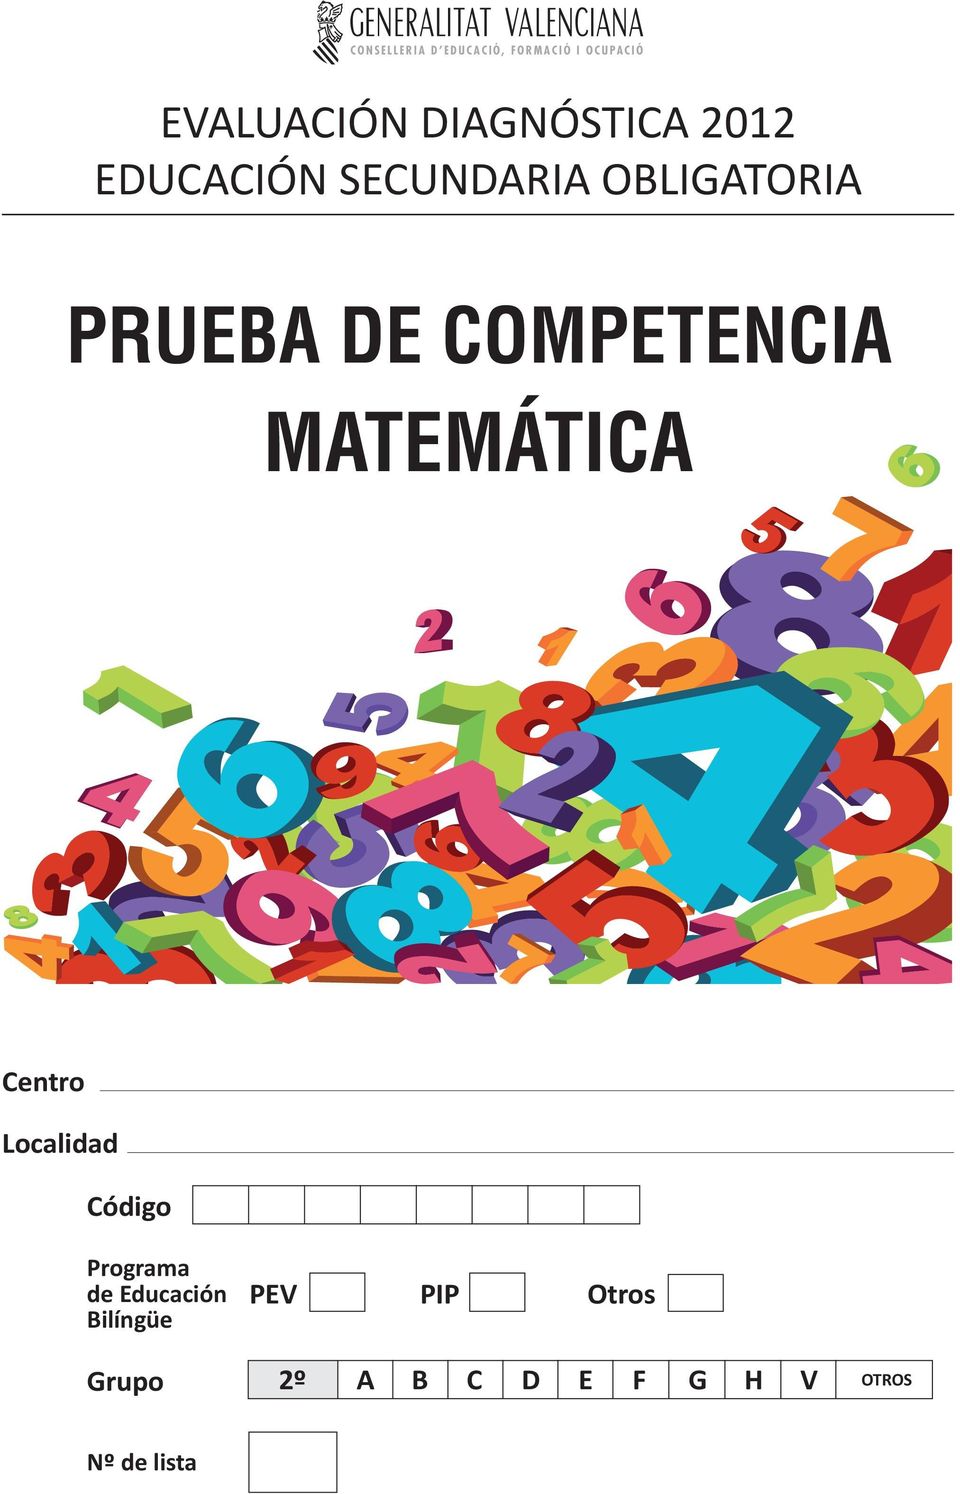 PRUEBA DE COMPETENCIA MATEMÁTICA Centro Localidad Código Programa de